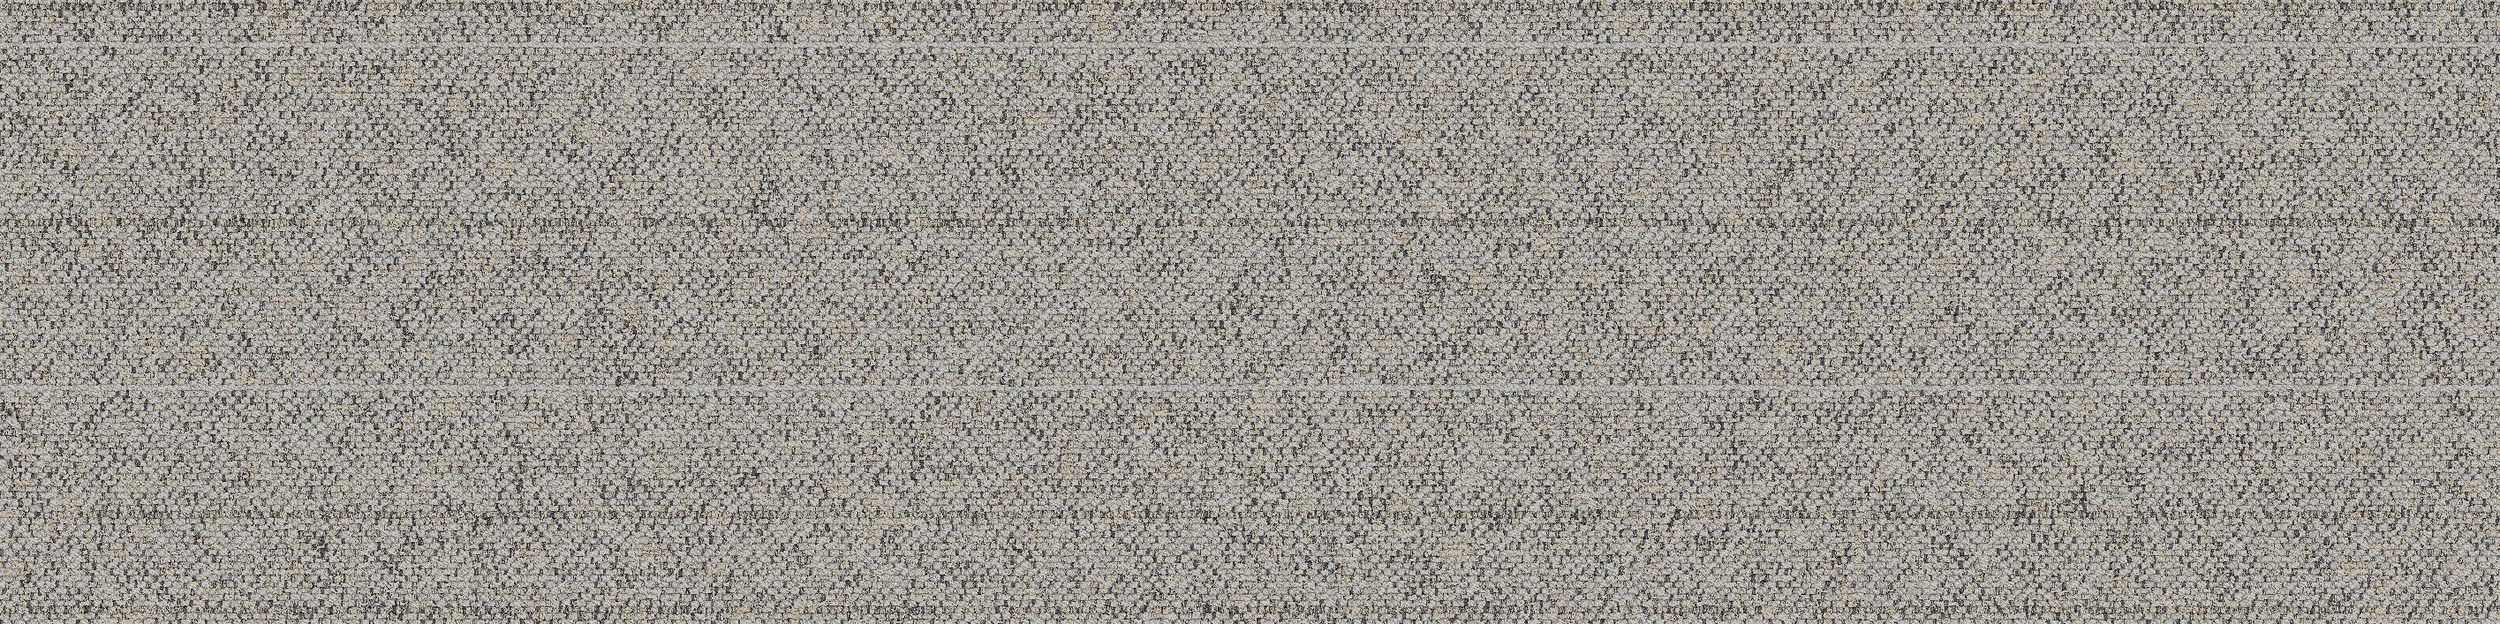 WW860 Carpet Tile In Linen Tweed Bildnummer 2